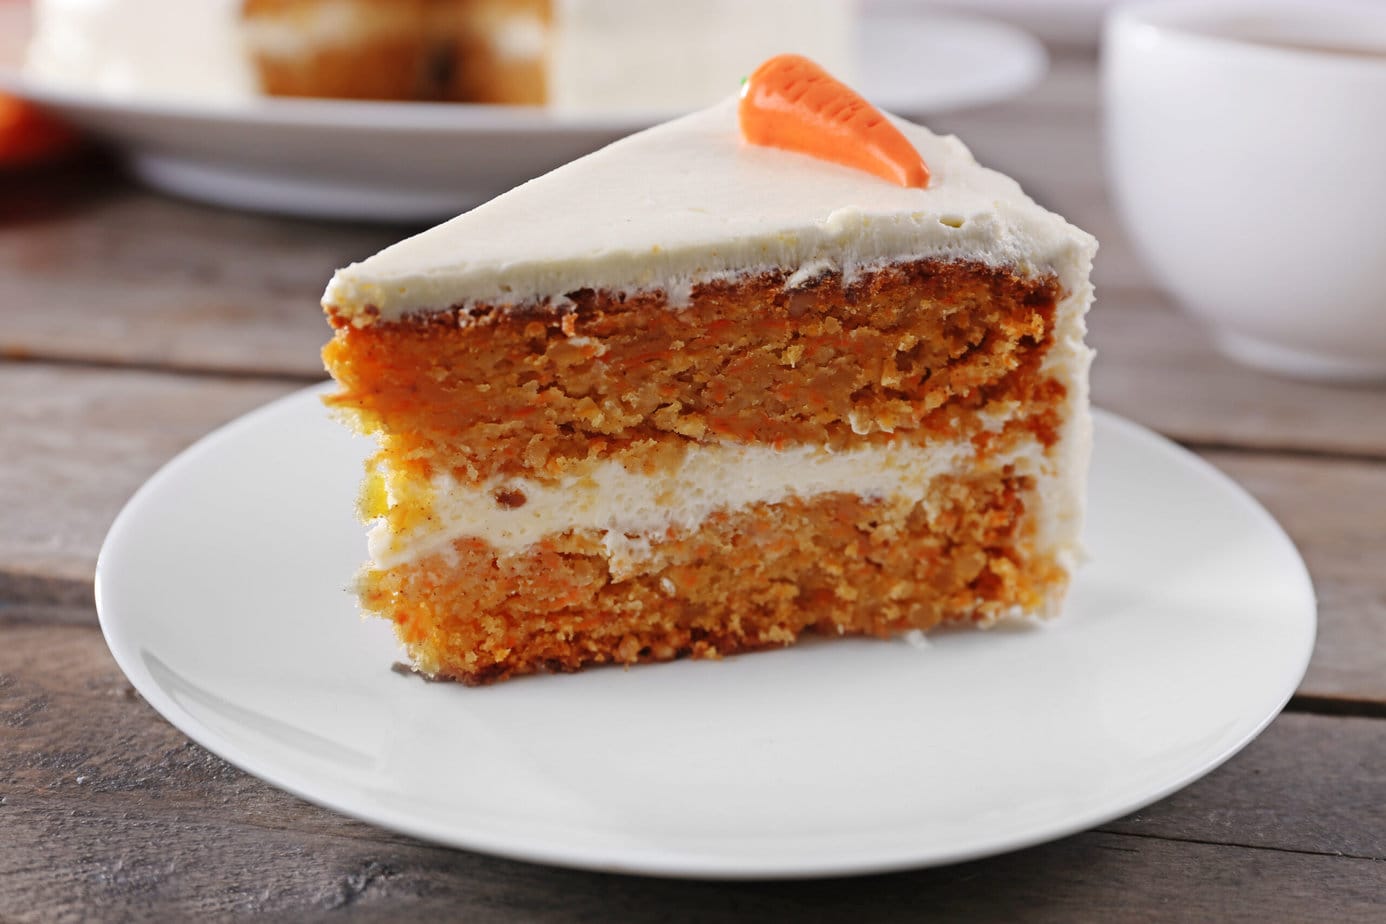 Authentique carrot cake américain